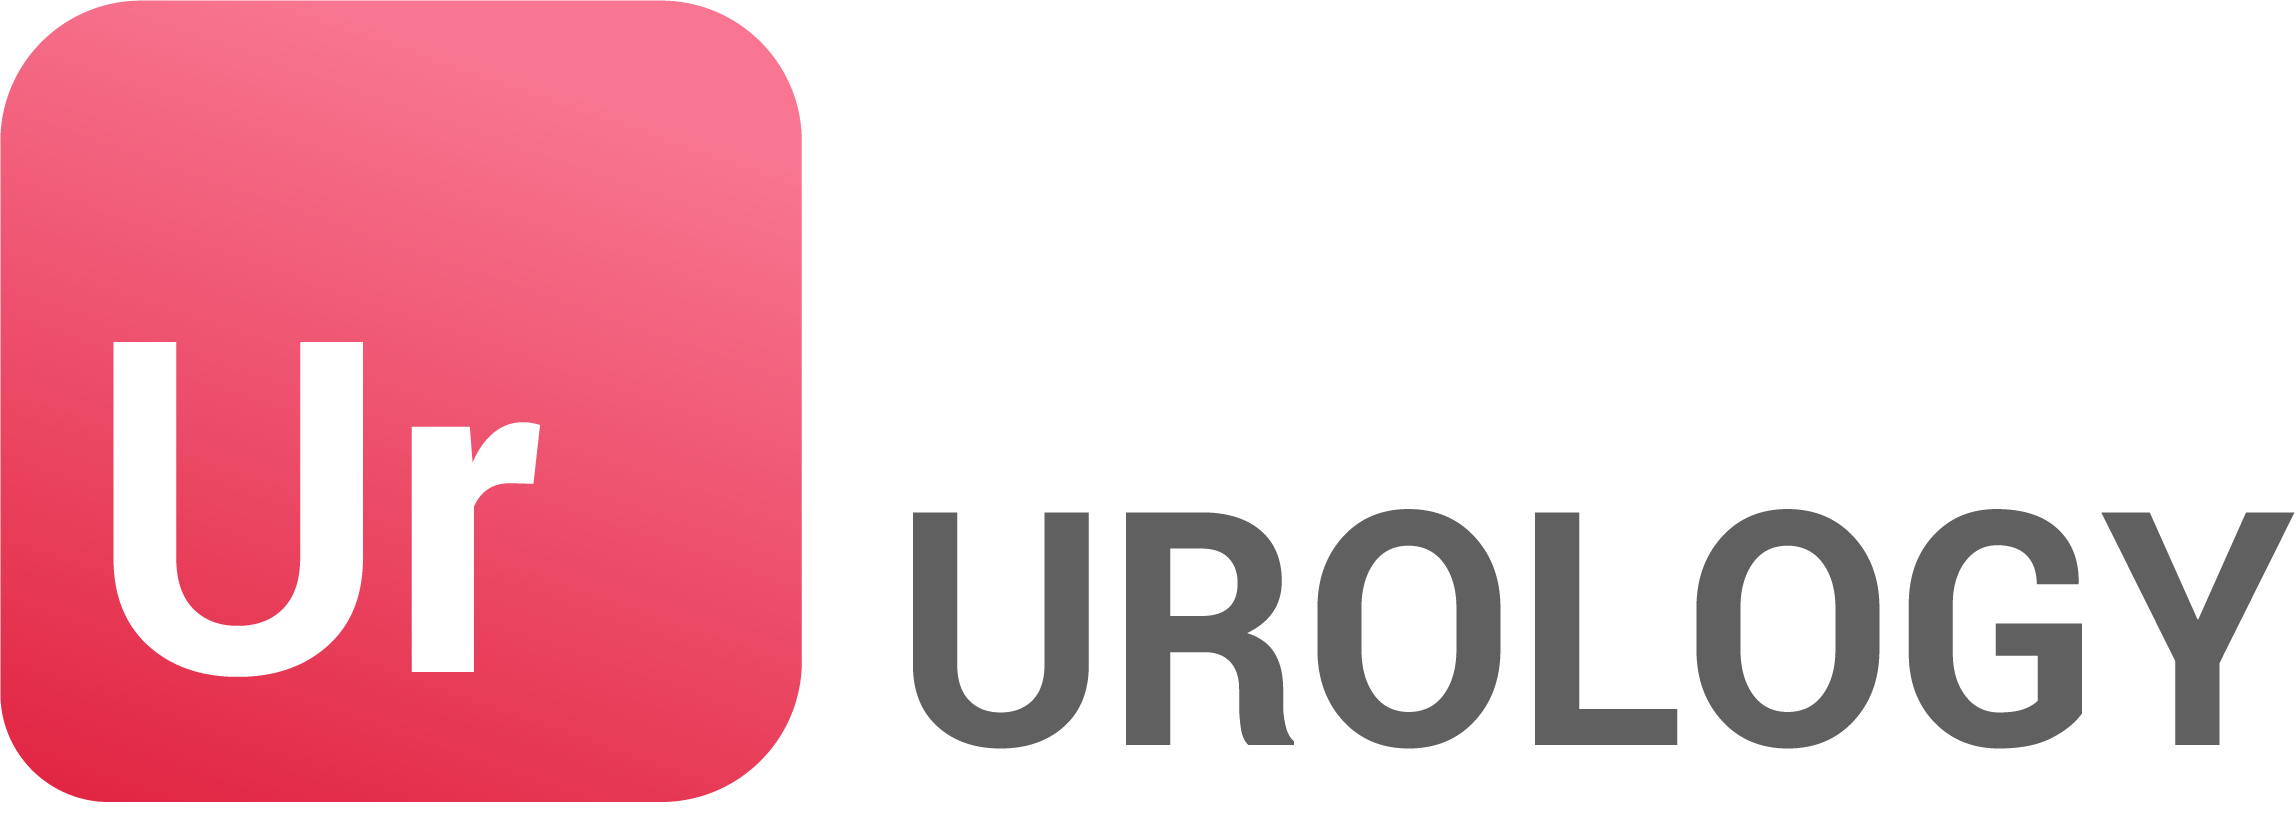 Urology Image